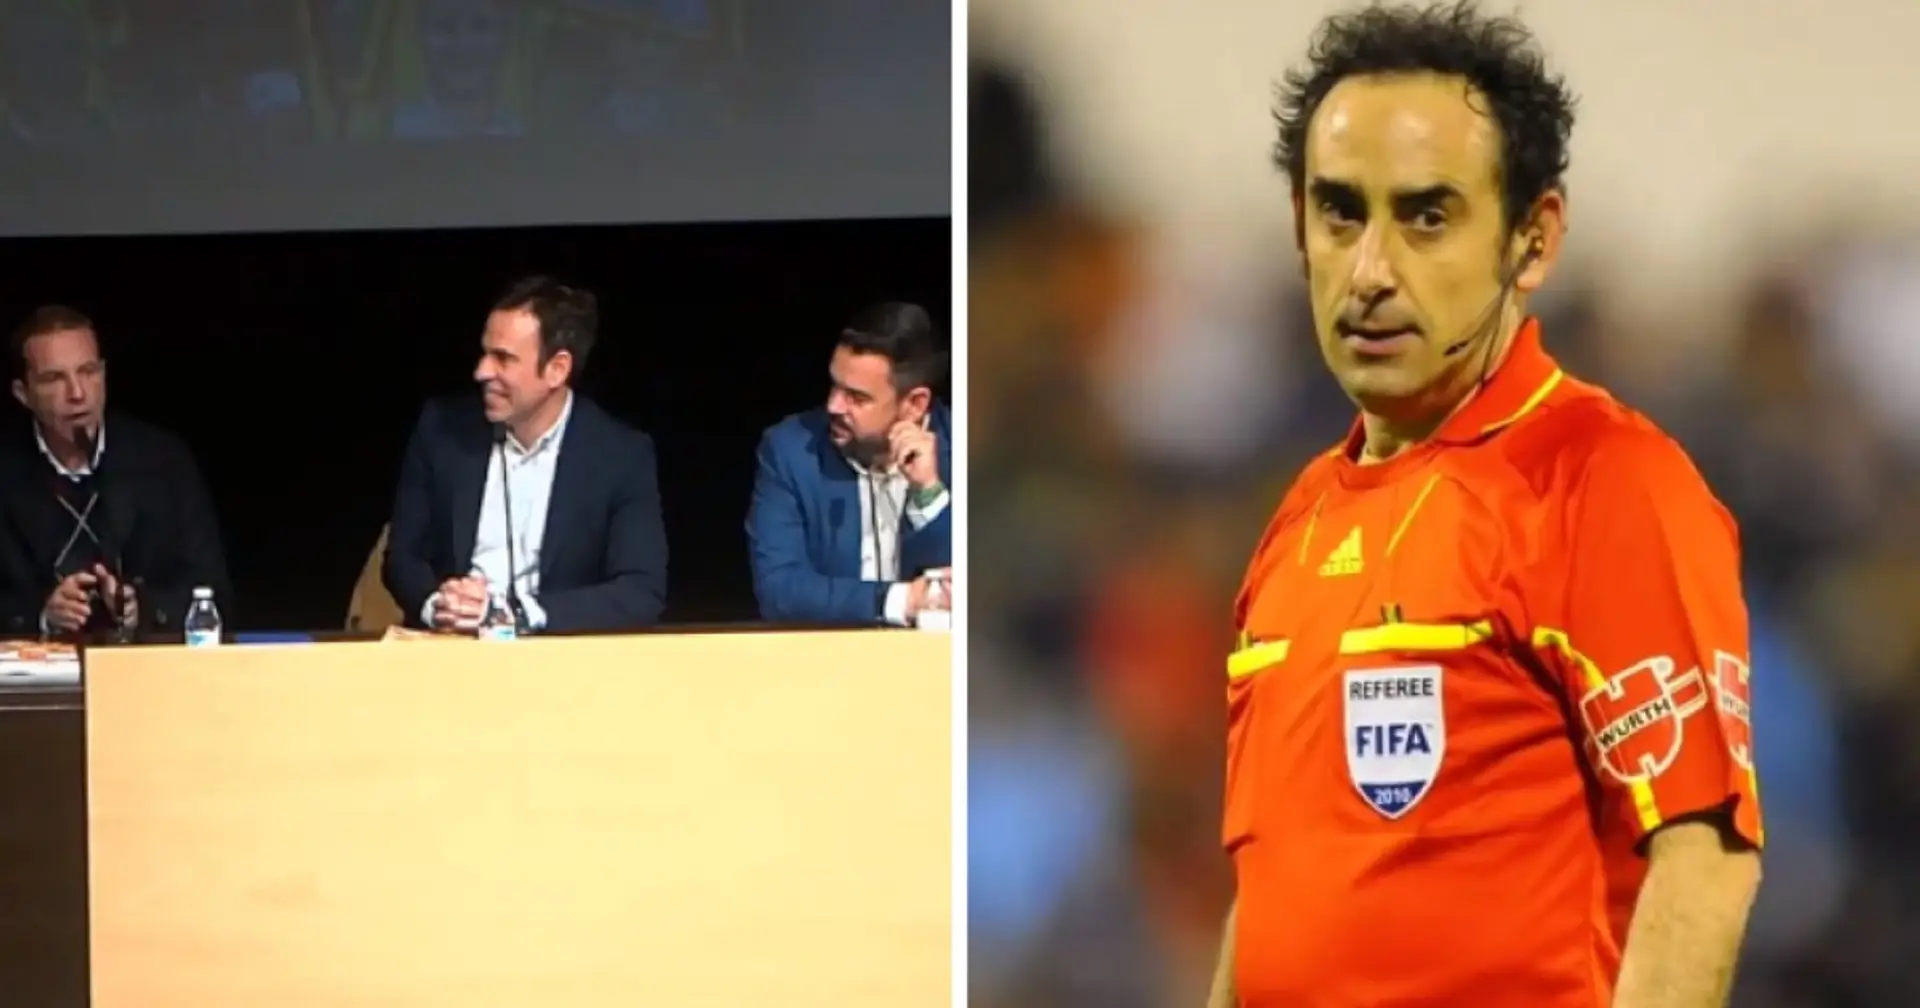 "Wir haben uns umarmt und gefeiert": Spanischer Journalist deutet die Fanliebe eines ehemaligen Schiedsrichters zu Barcelona an